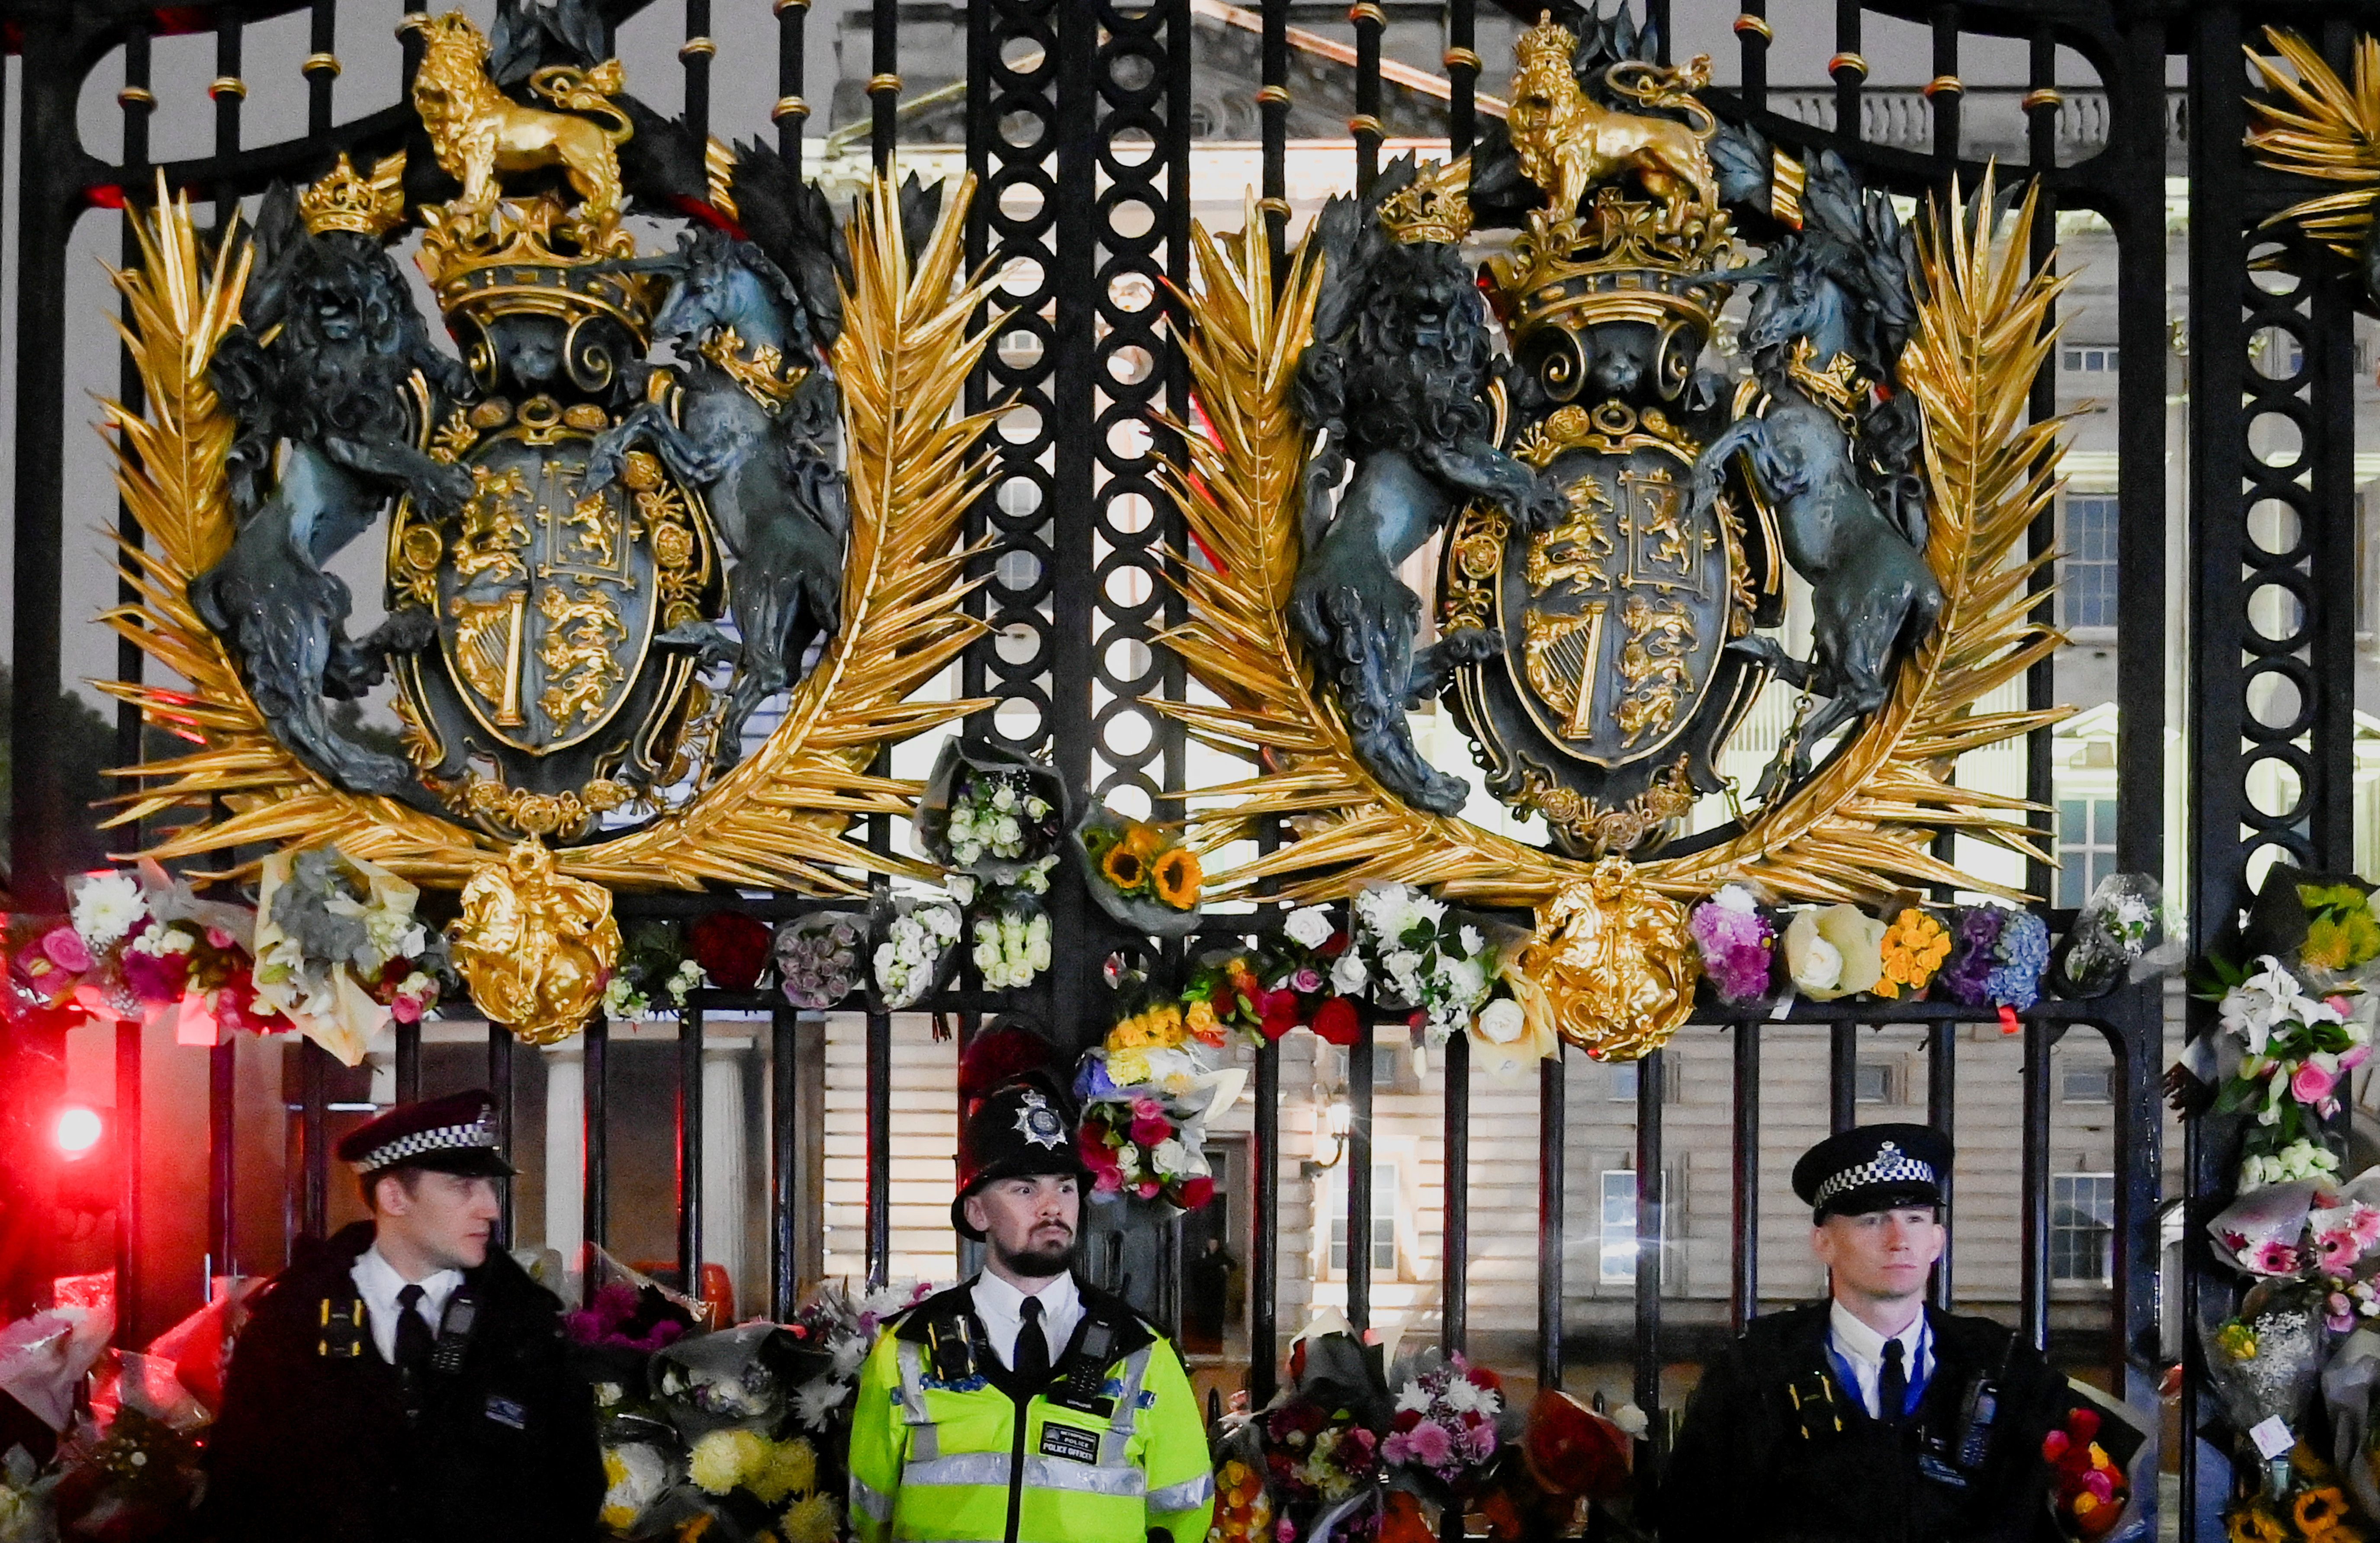 Agentes de policía montan guardia mientras se depositan flores en la puerta del Palacio de Buckingham (REUTERS/Toby Melville)